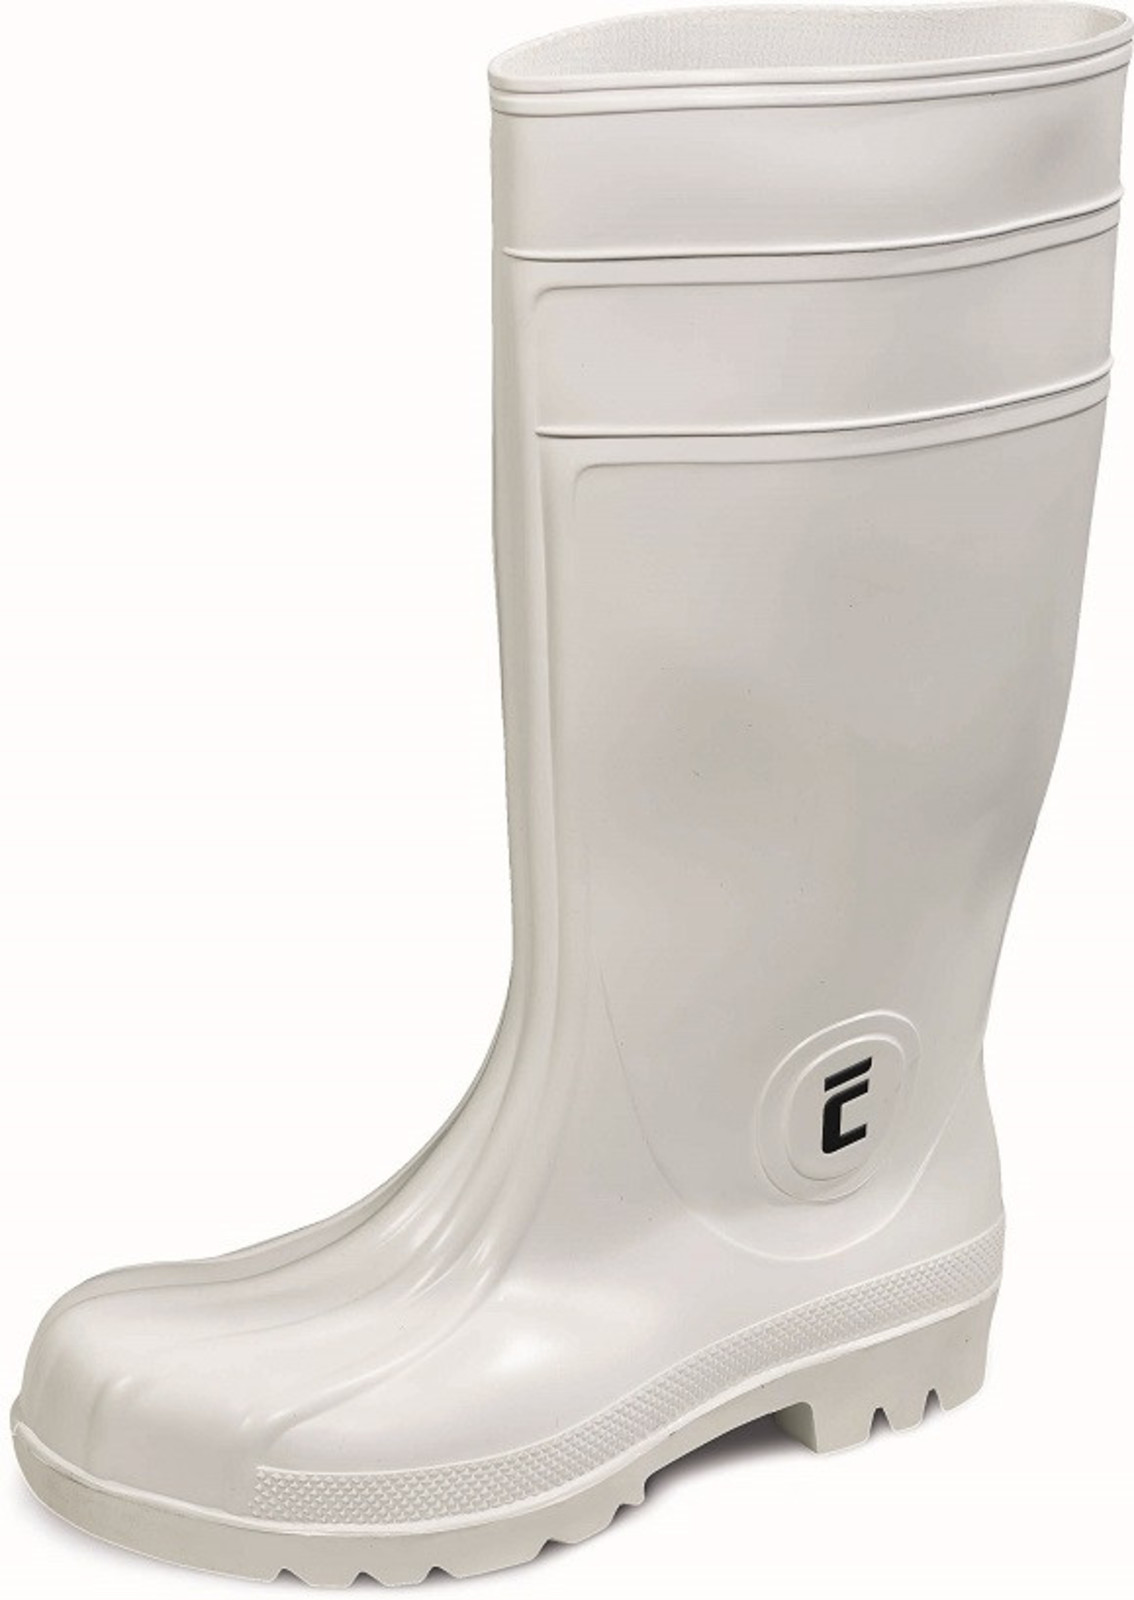 Bezpečnostné gumáky Eurofort S4 - veľkosť: 43, farba: biela